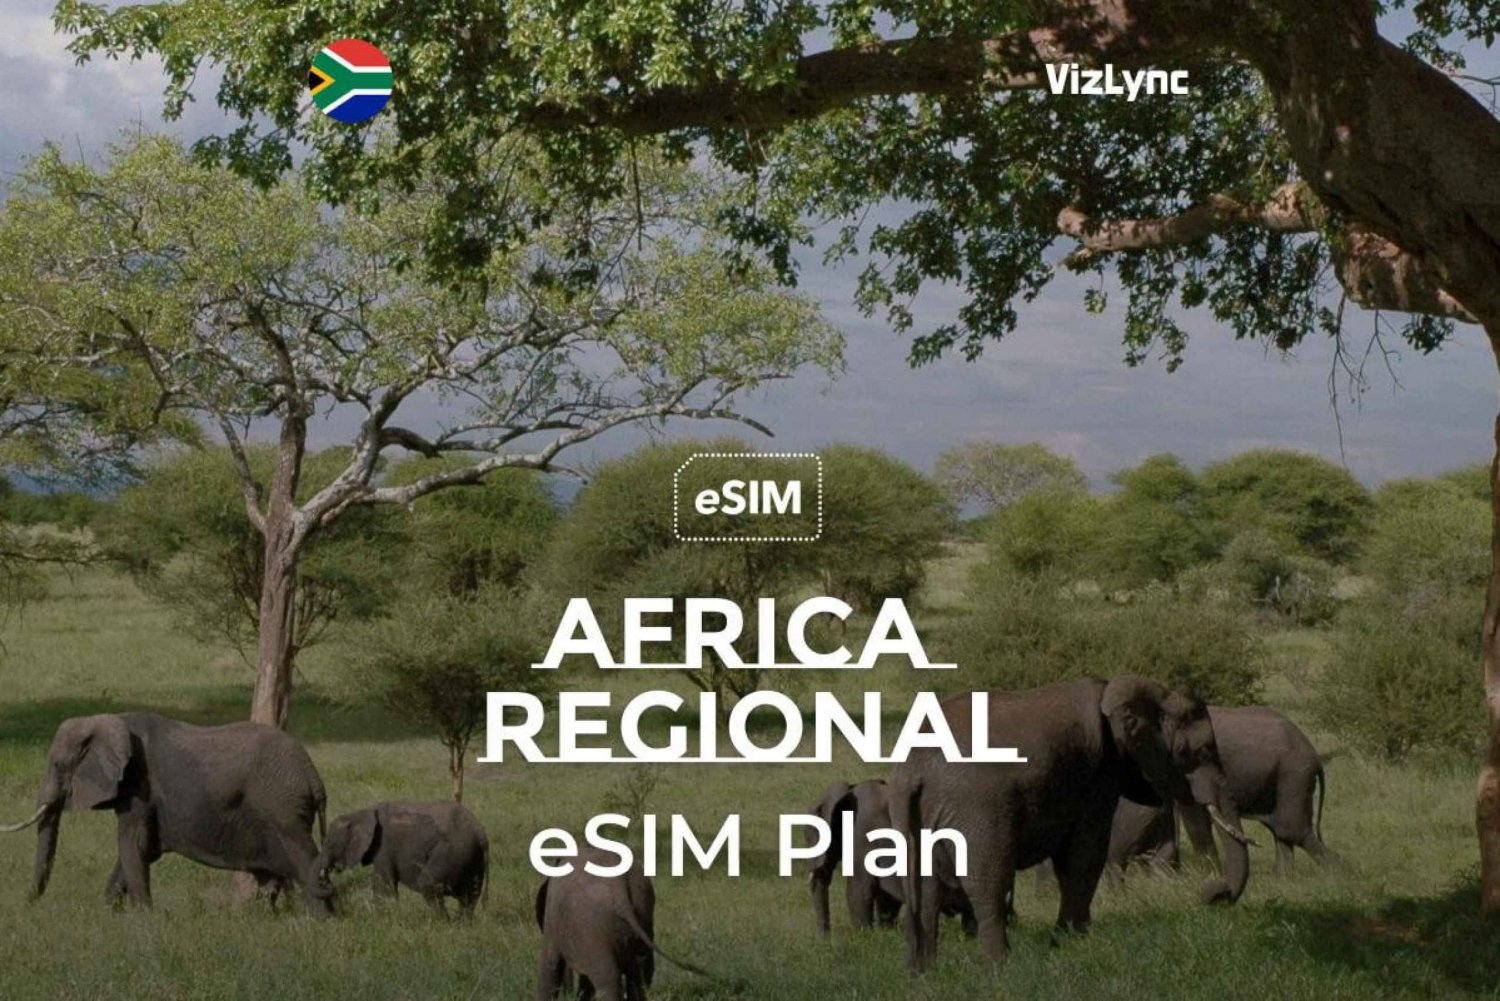 Beste reise-eSIM for Afrika med 10 GB data i 30 dager'